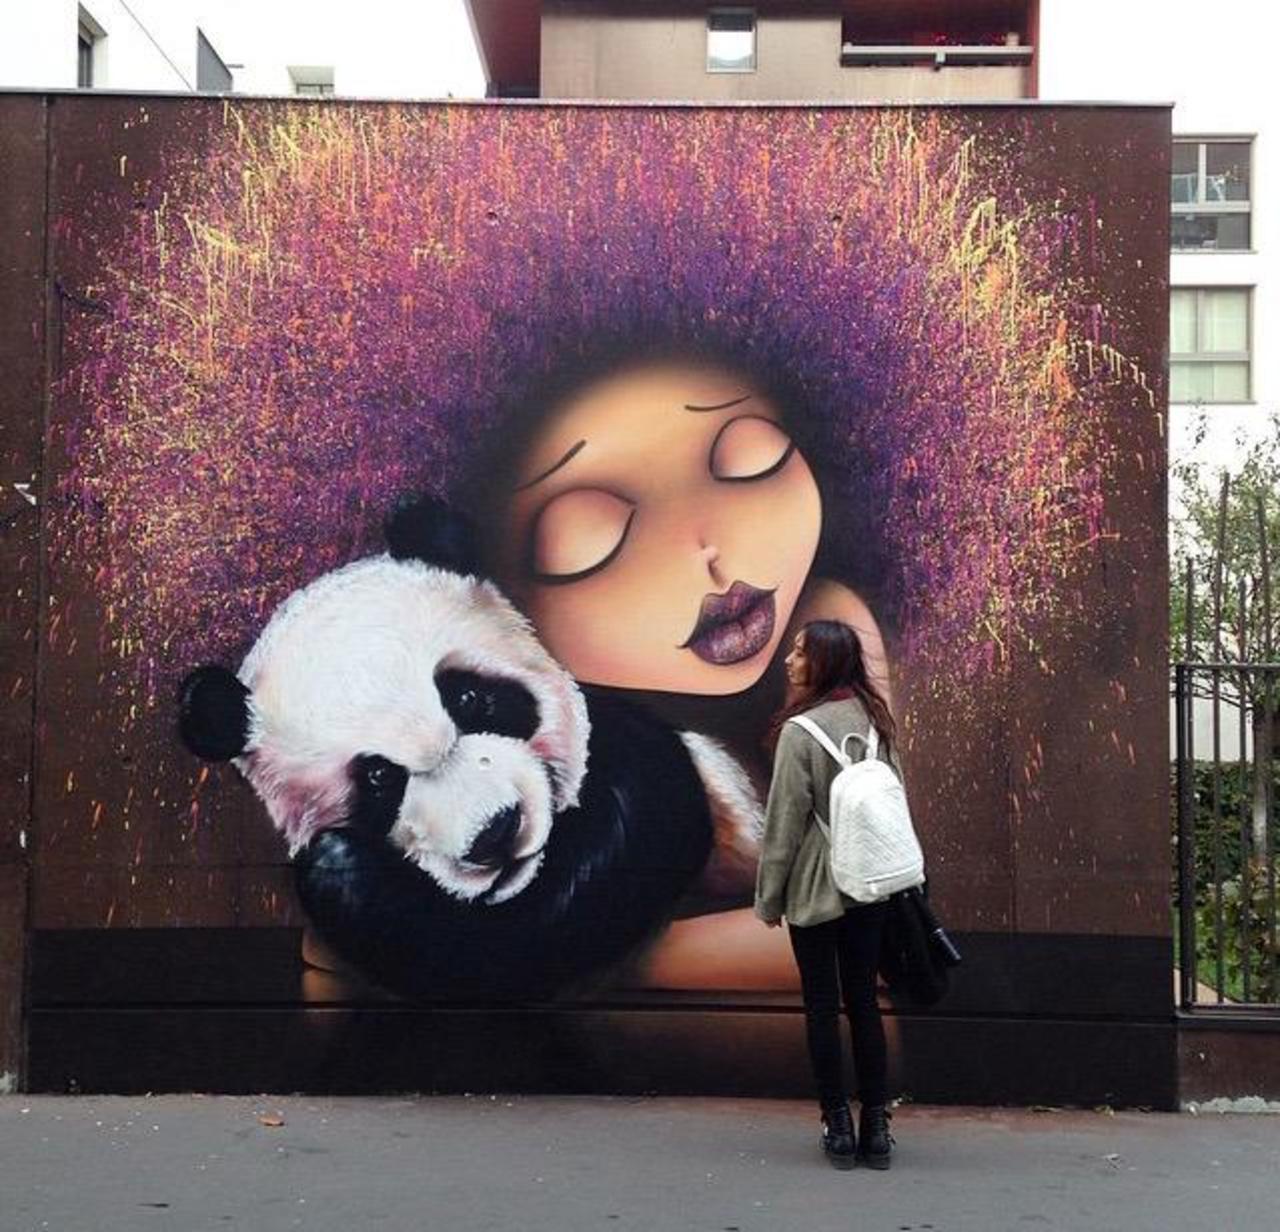 Street Art by VinieGraffiti in Paris 

#art #graffiti #mural #streetart http://t.co/krKejZGFKC http://fb.me/7xXd7WI9C